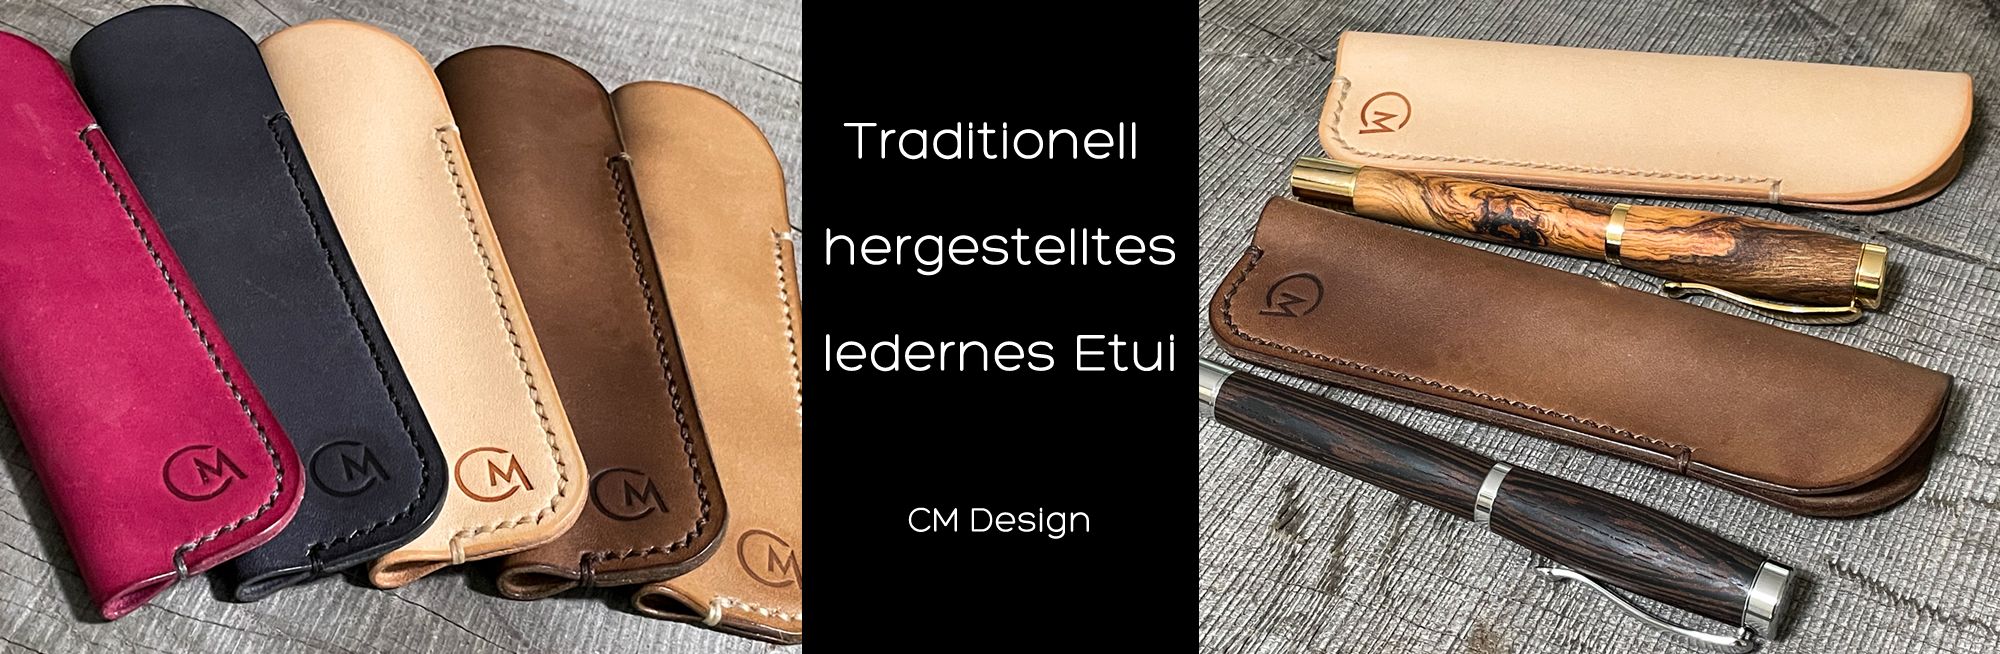  Traditionell hergestelltes, ledernes Etui für Füller - LOVECKY Leather 